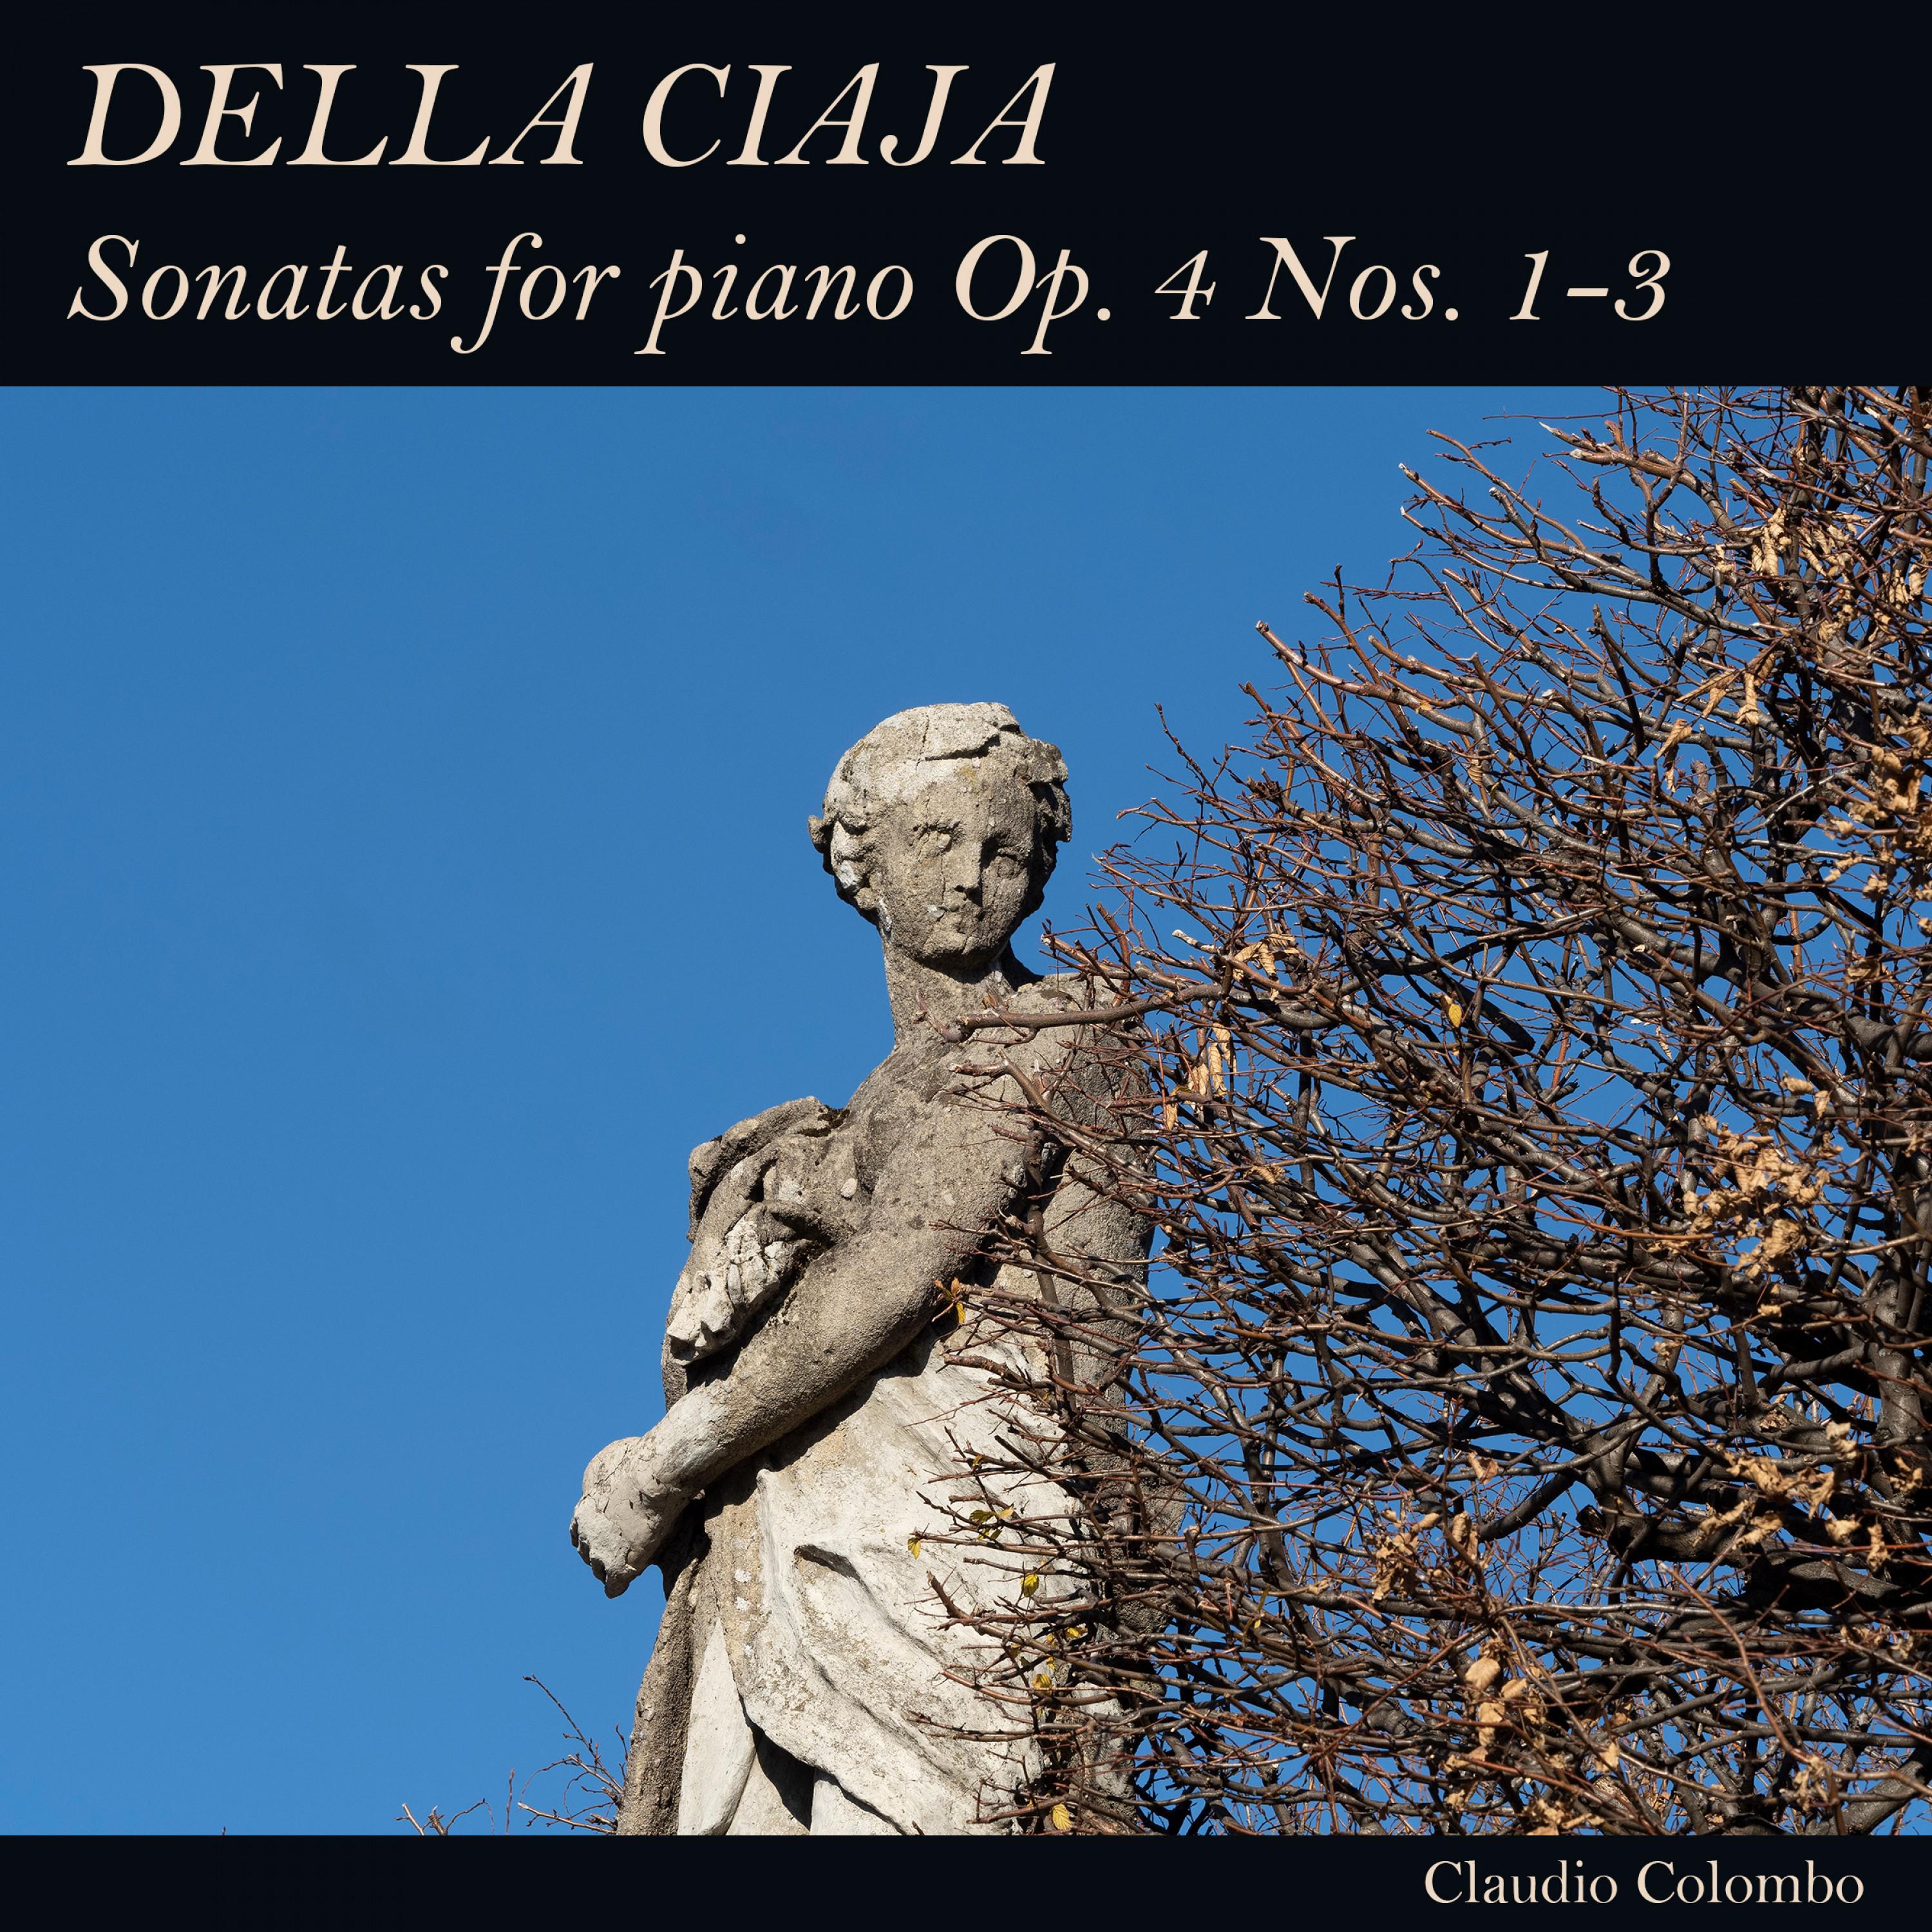 Sonata in F Major, Op. 4 No. 2: III. Lento